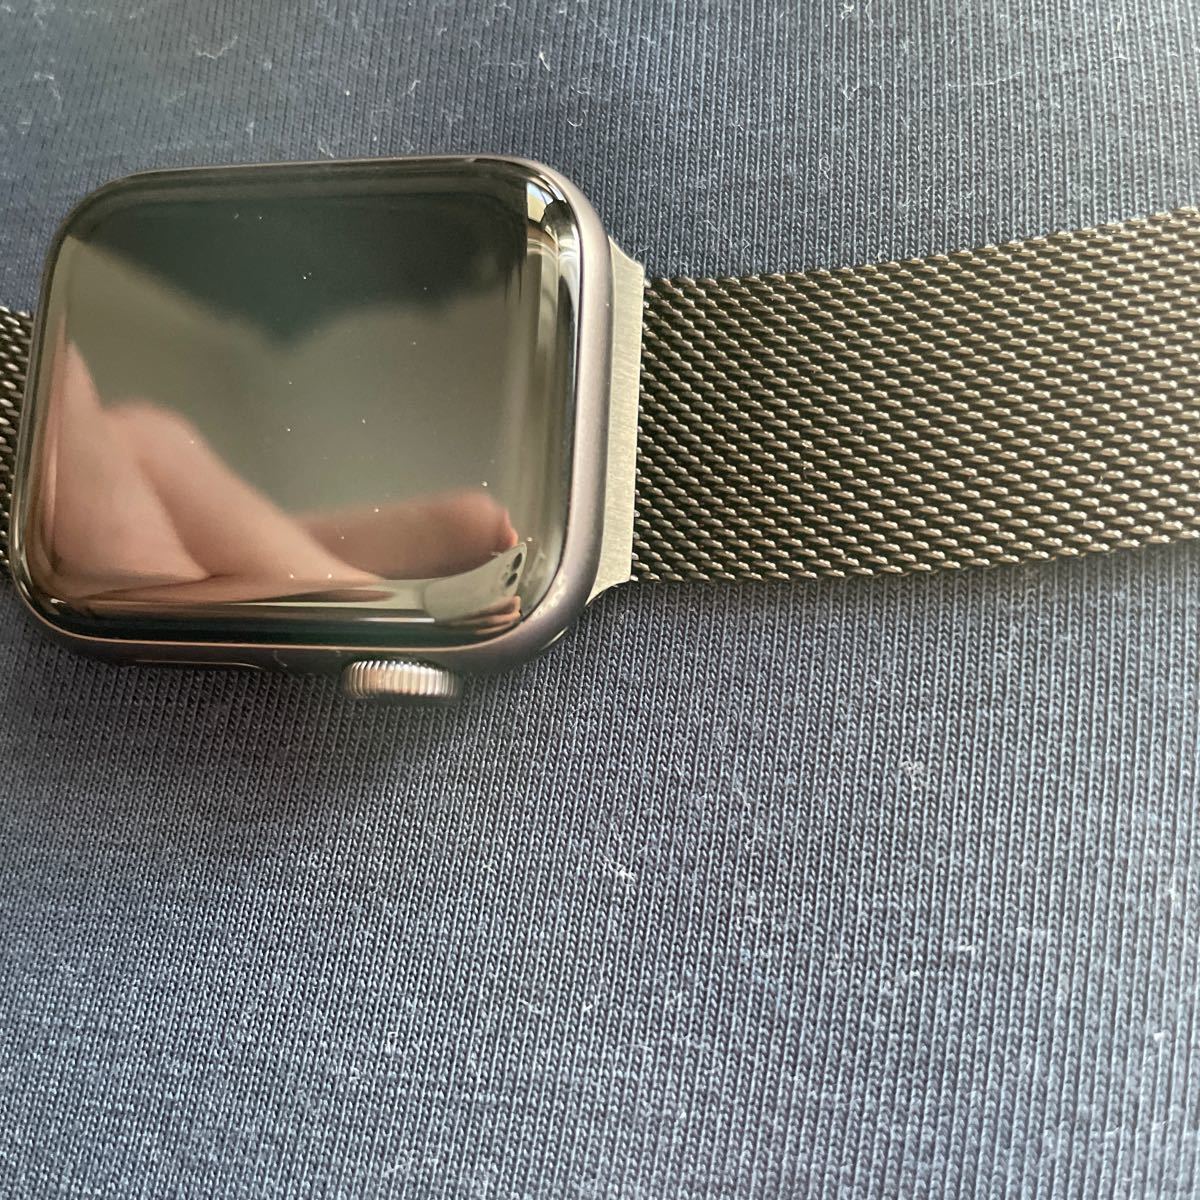 Apple Watch SE GPSモデル 40mmスペースグレイアルミニウムケースとブラックスポーツバンド